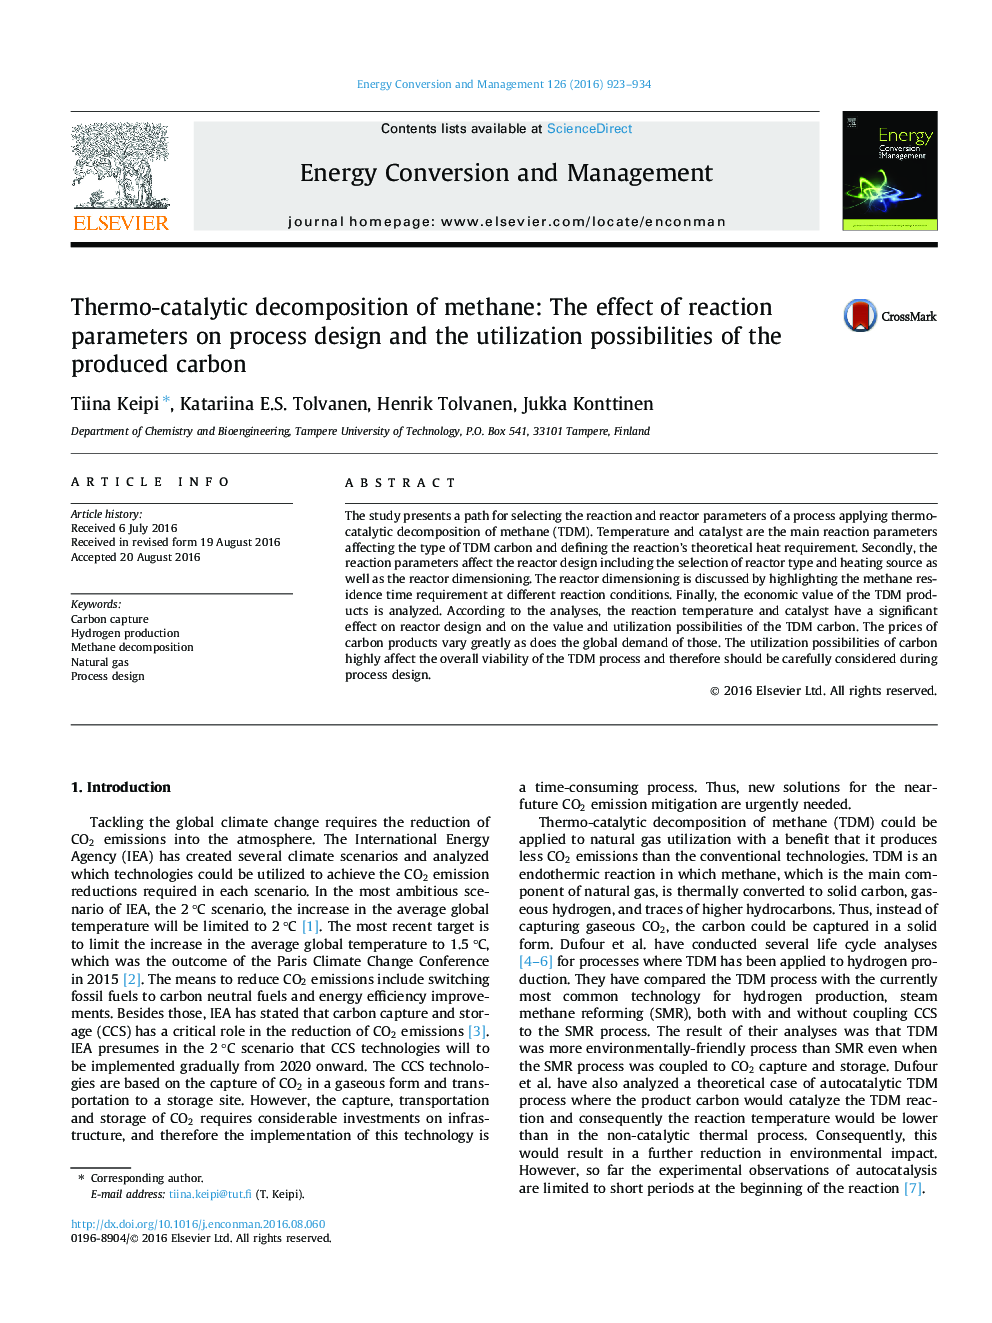 تجزیه ترموسی کاتالیزوری متان: اثر پارامترهای واکنش در طراحی فرایند و امکان استفاده از کربن تولید شده 